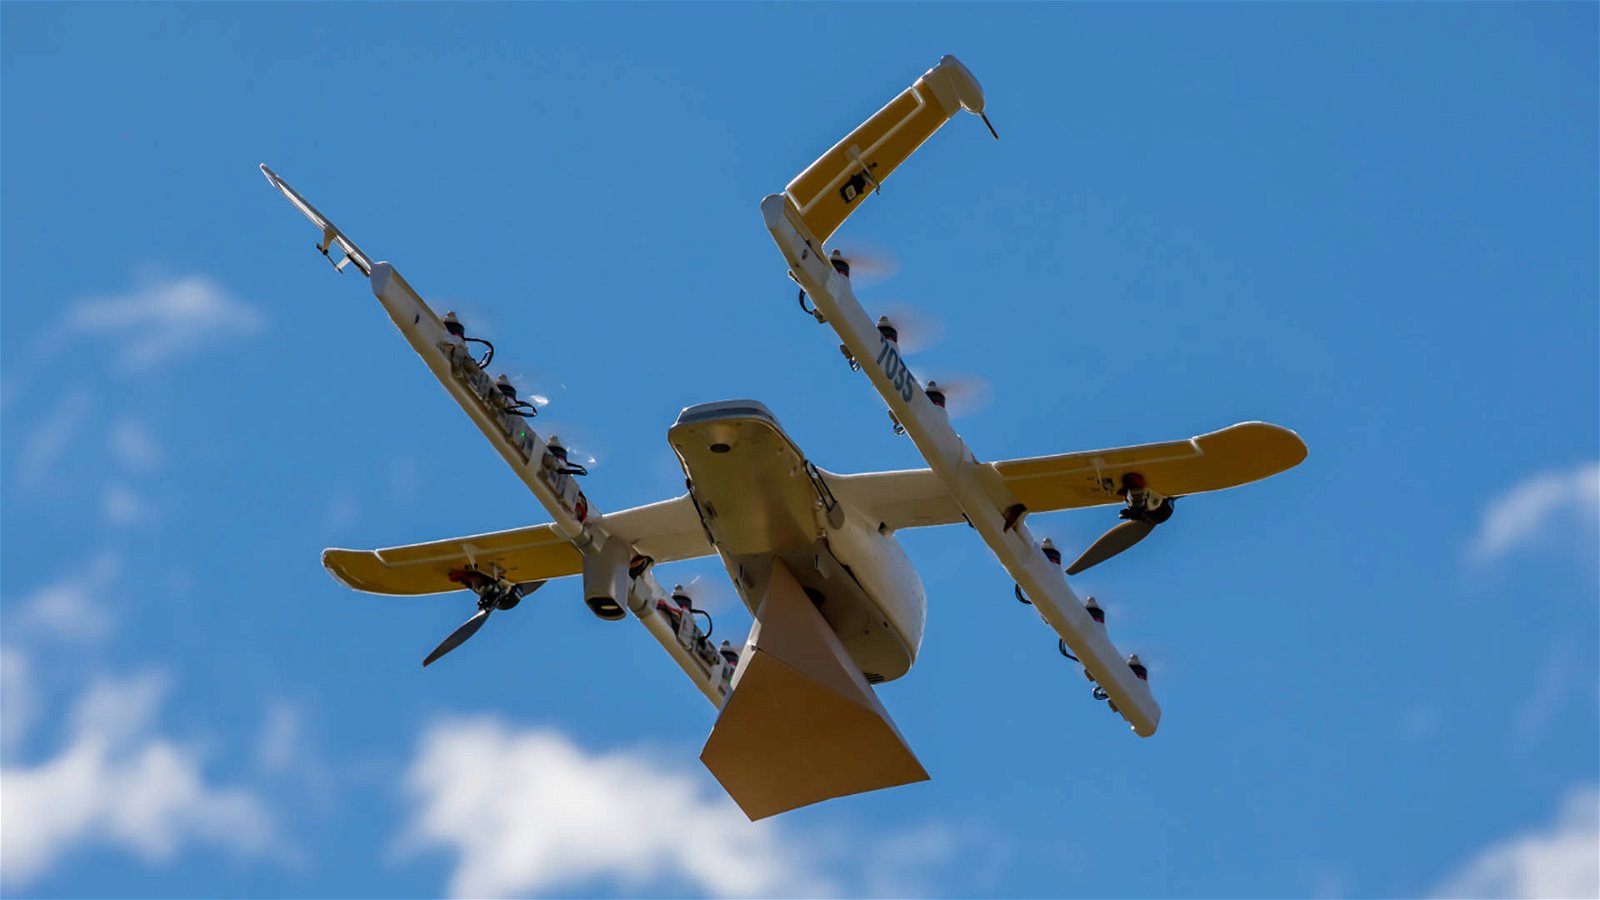 Immagine di Wing, i droni di Google per le consegne ottengono l'autorizzazione al volo